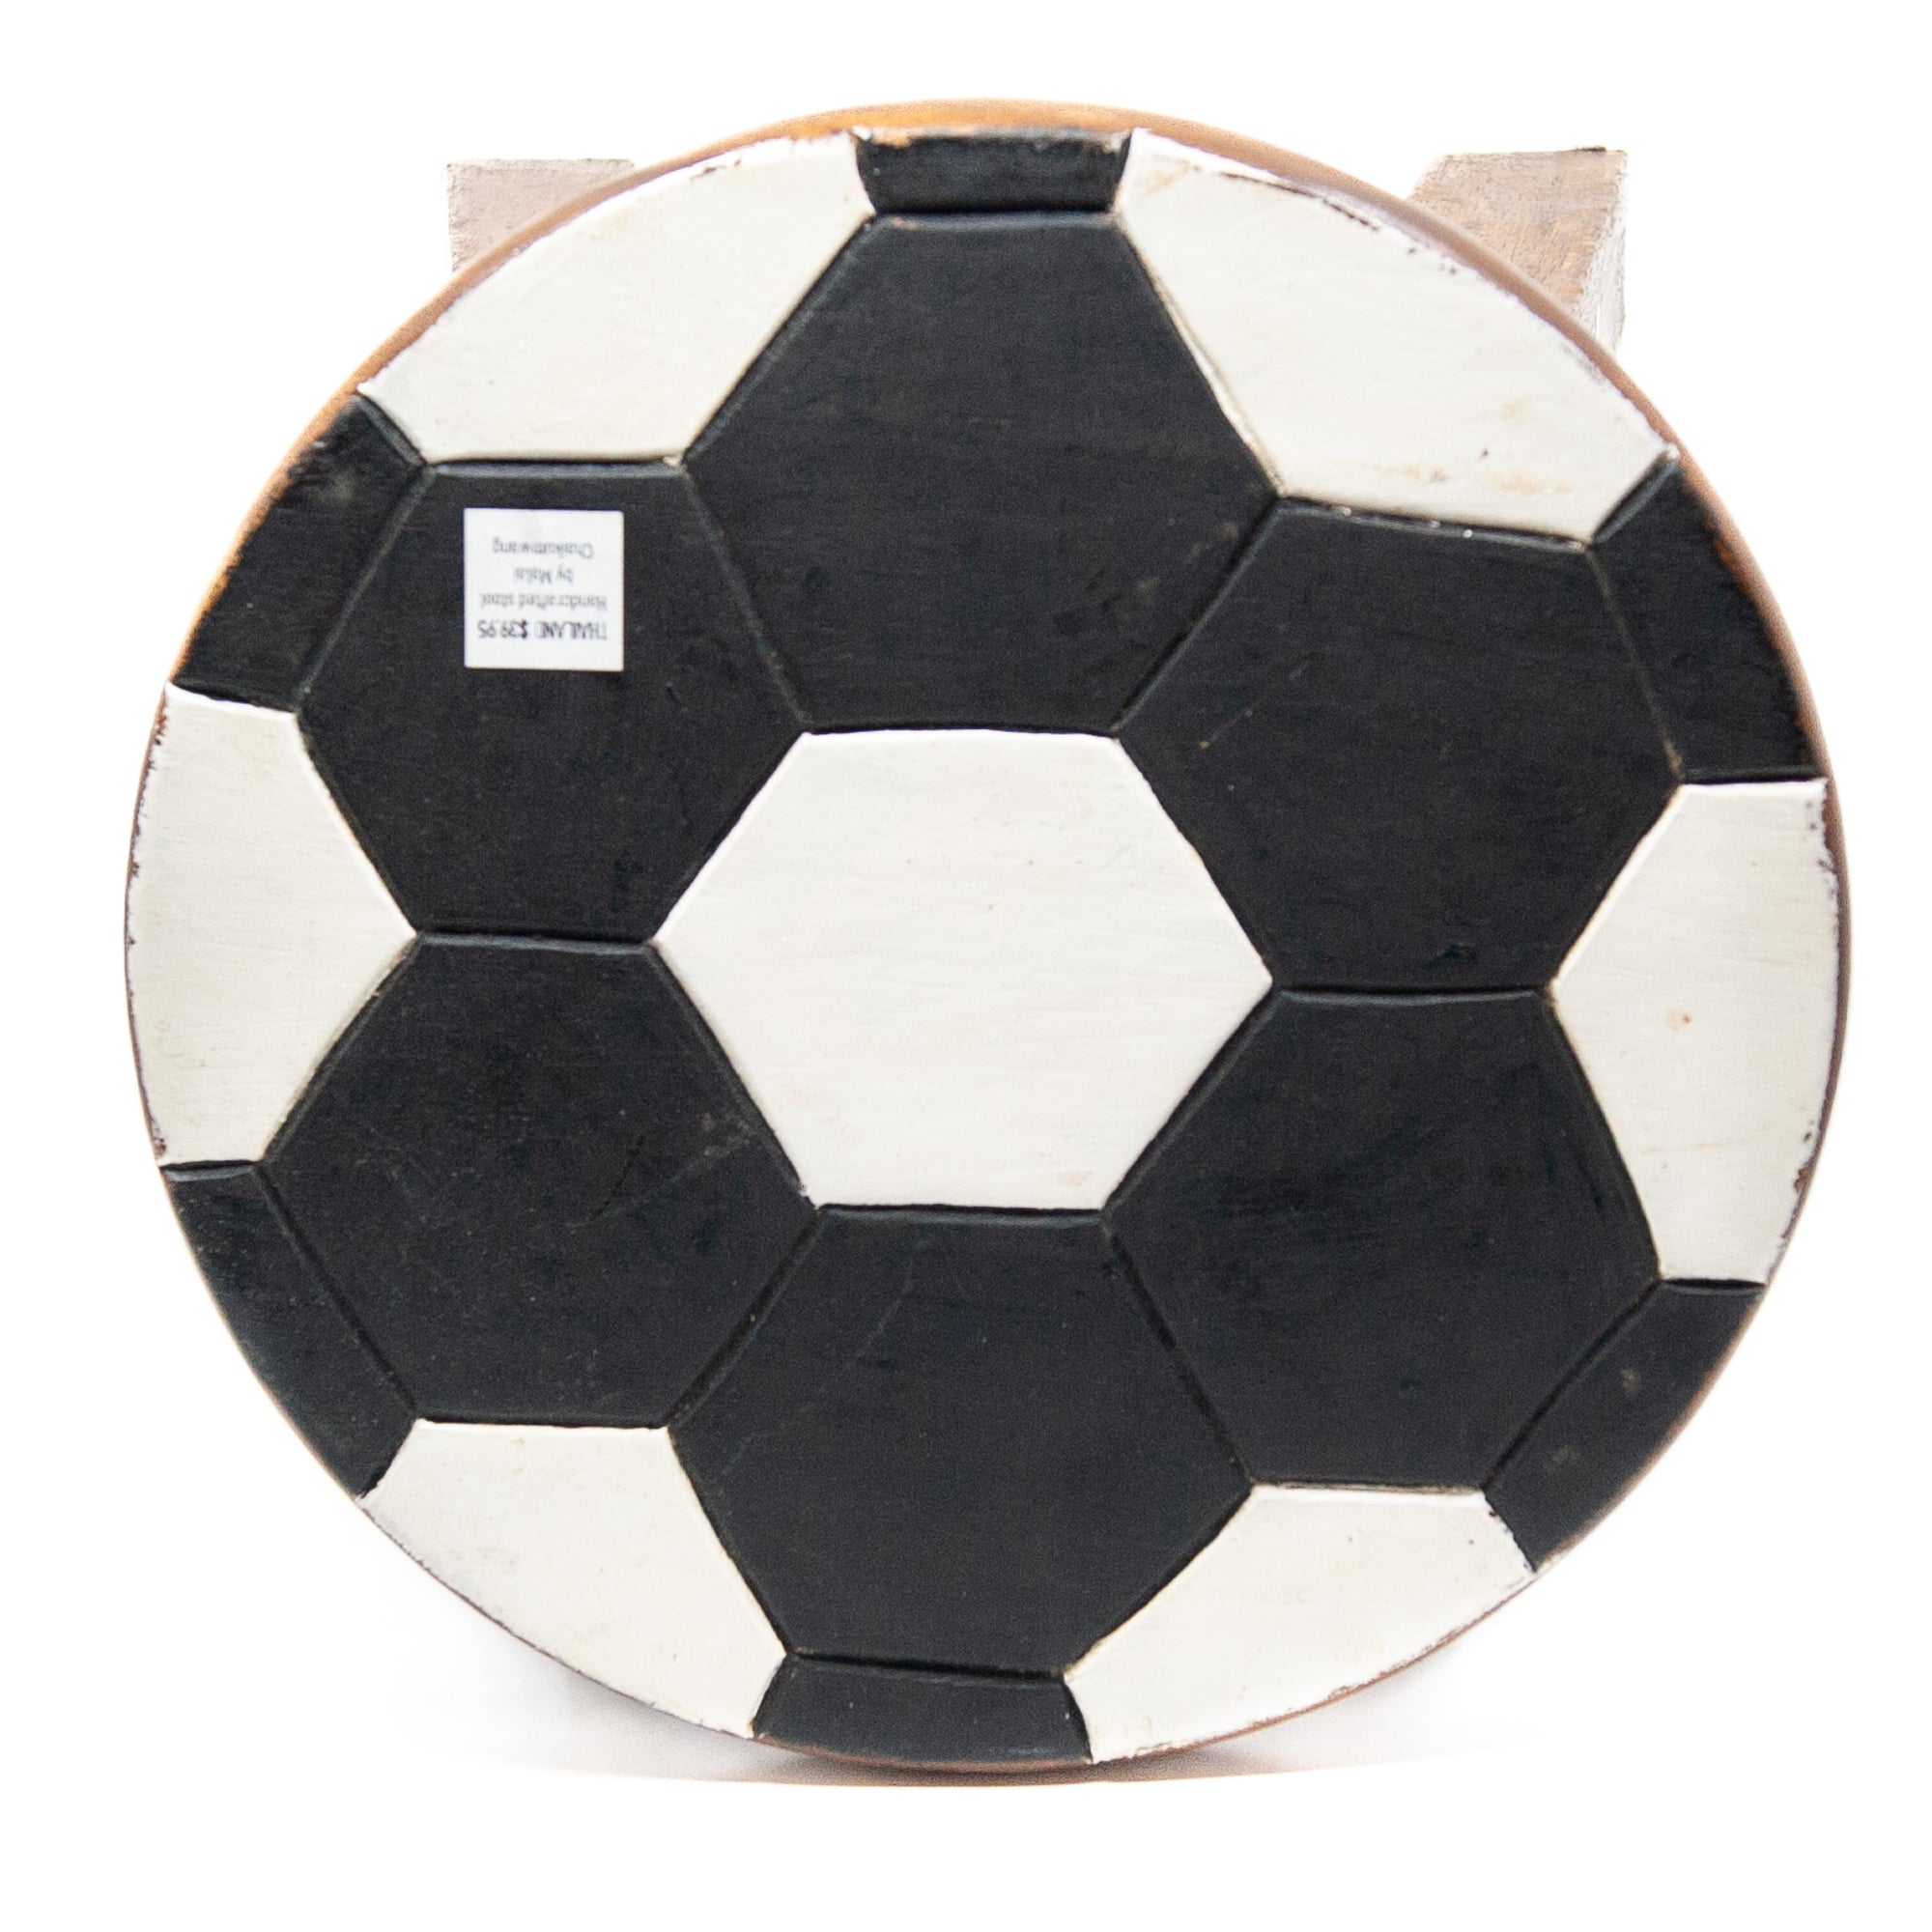 Children's Stool - Soccer Ball